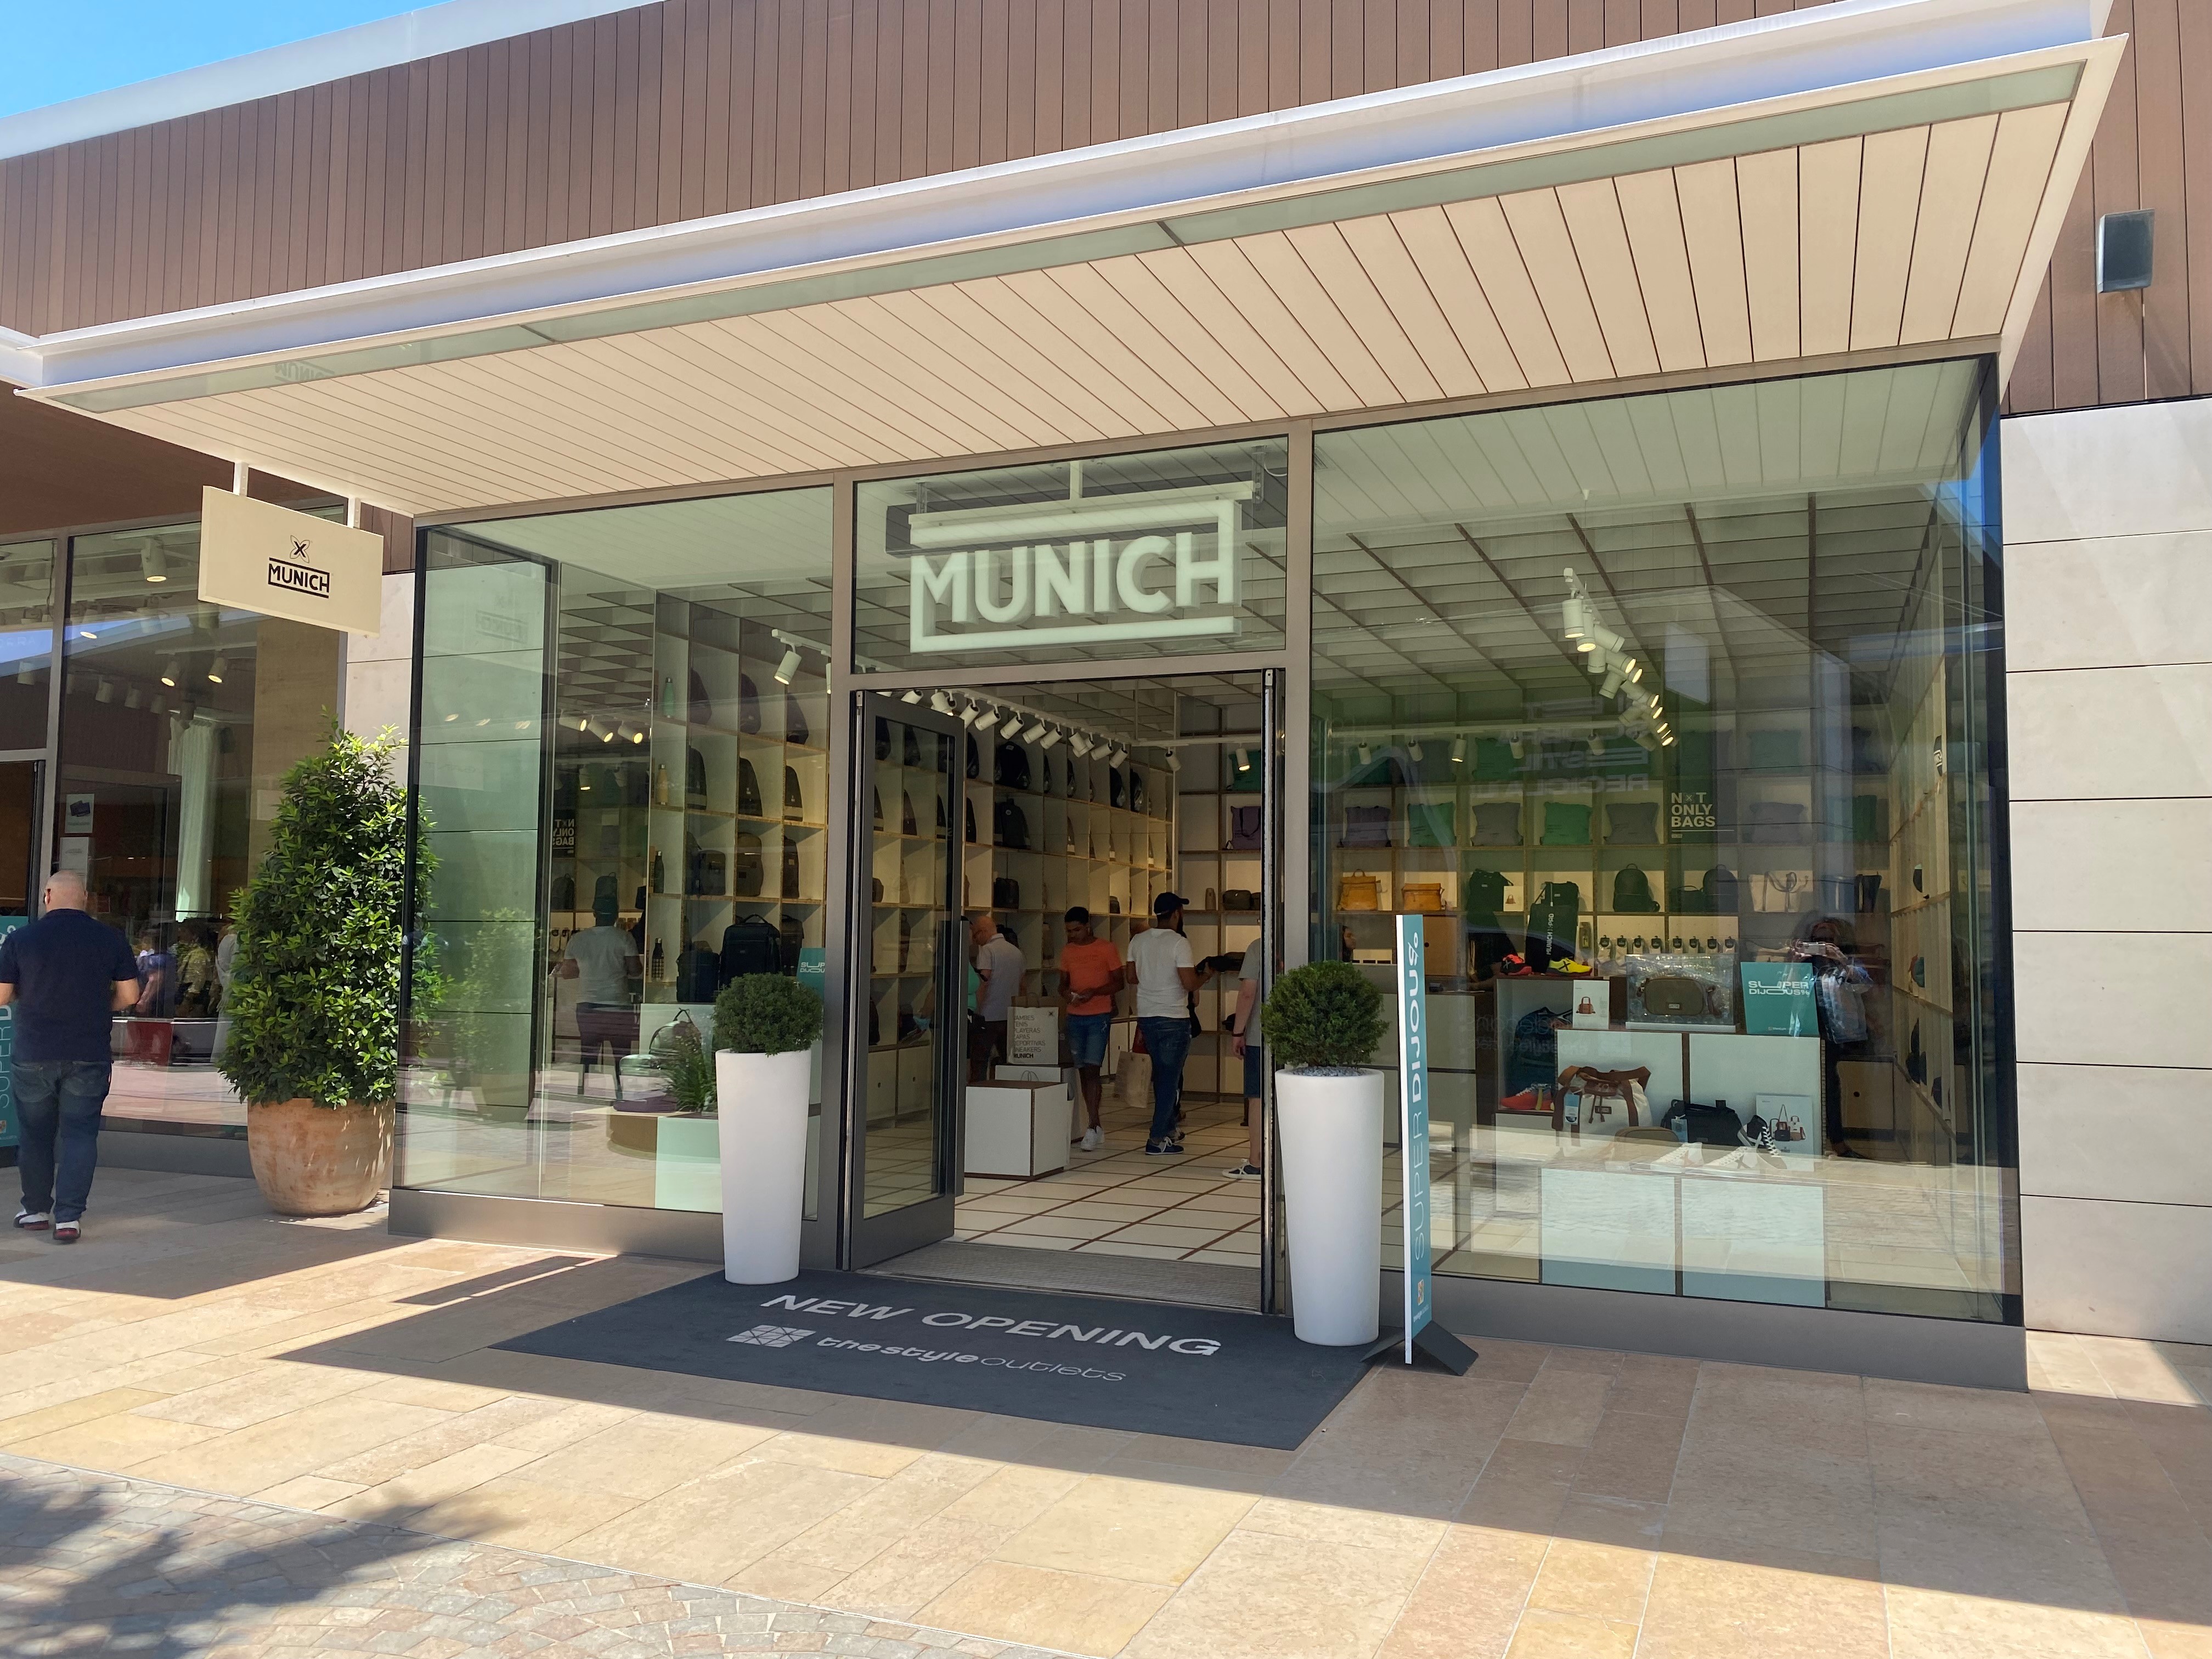 Munich, Hurley y Havaianas tiendas en Viladecans Outlets - CMD Sport